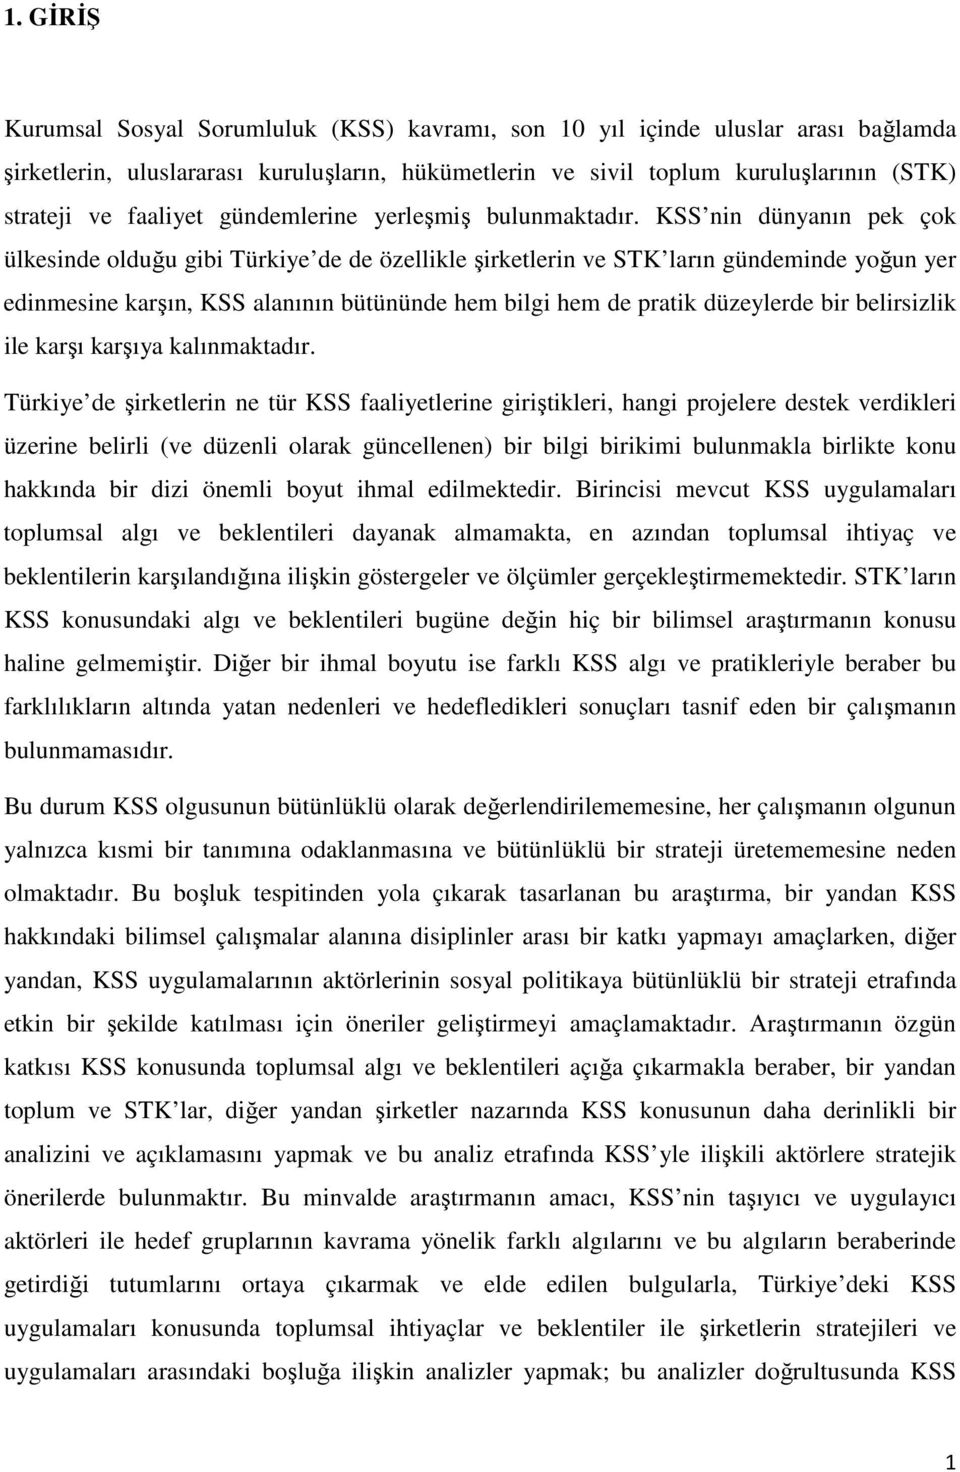 KSS nin dünyanın pek çok ülkesinde olduğu gibi Türkiye de de özellikle şirketlerin ve STK ların gündeminde yoğun yer edinmesine karşın, KSS alanının bütününde hem bilgi hem de pratik düzeylerde bir